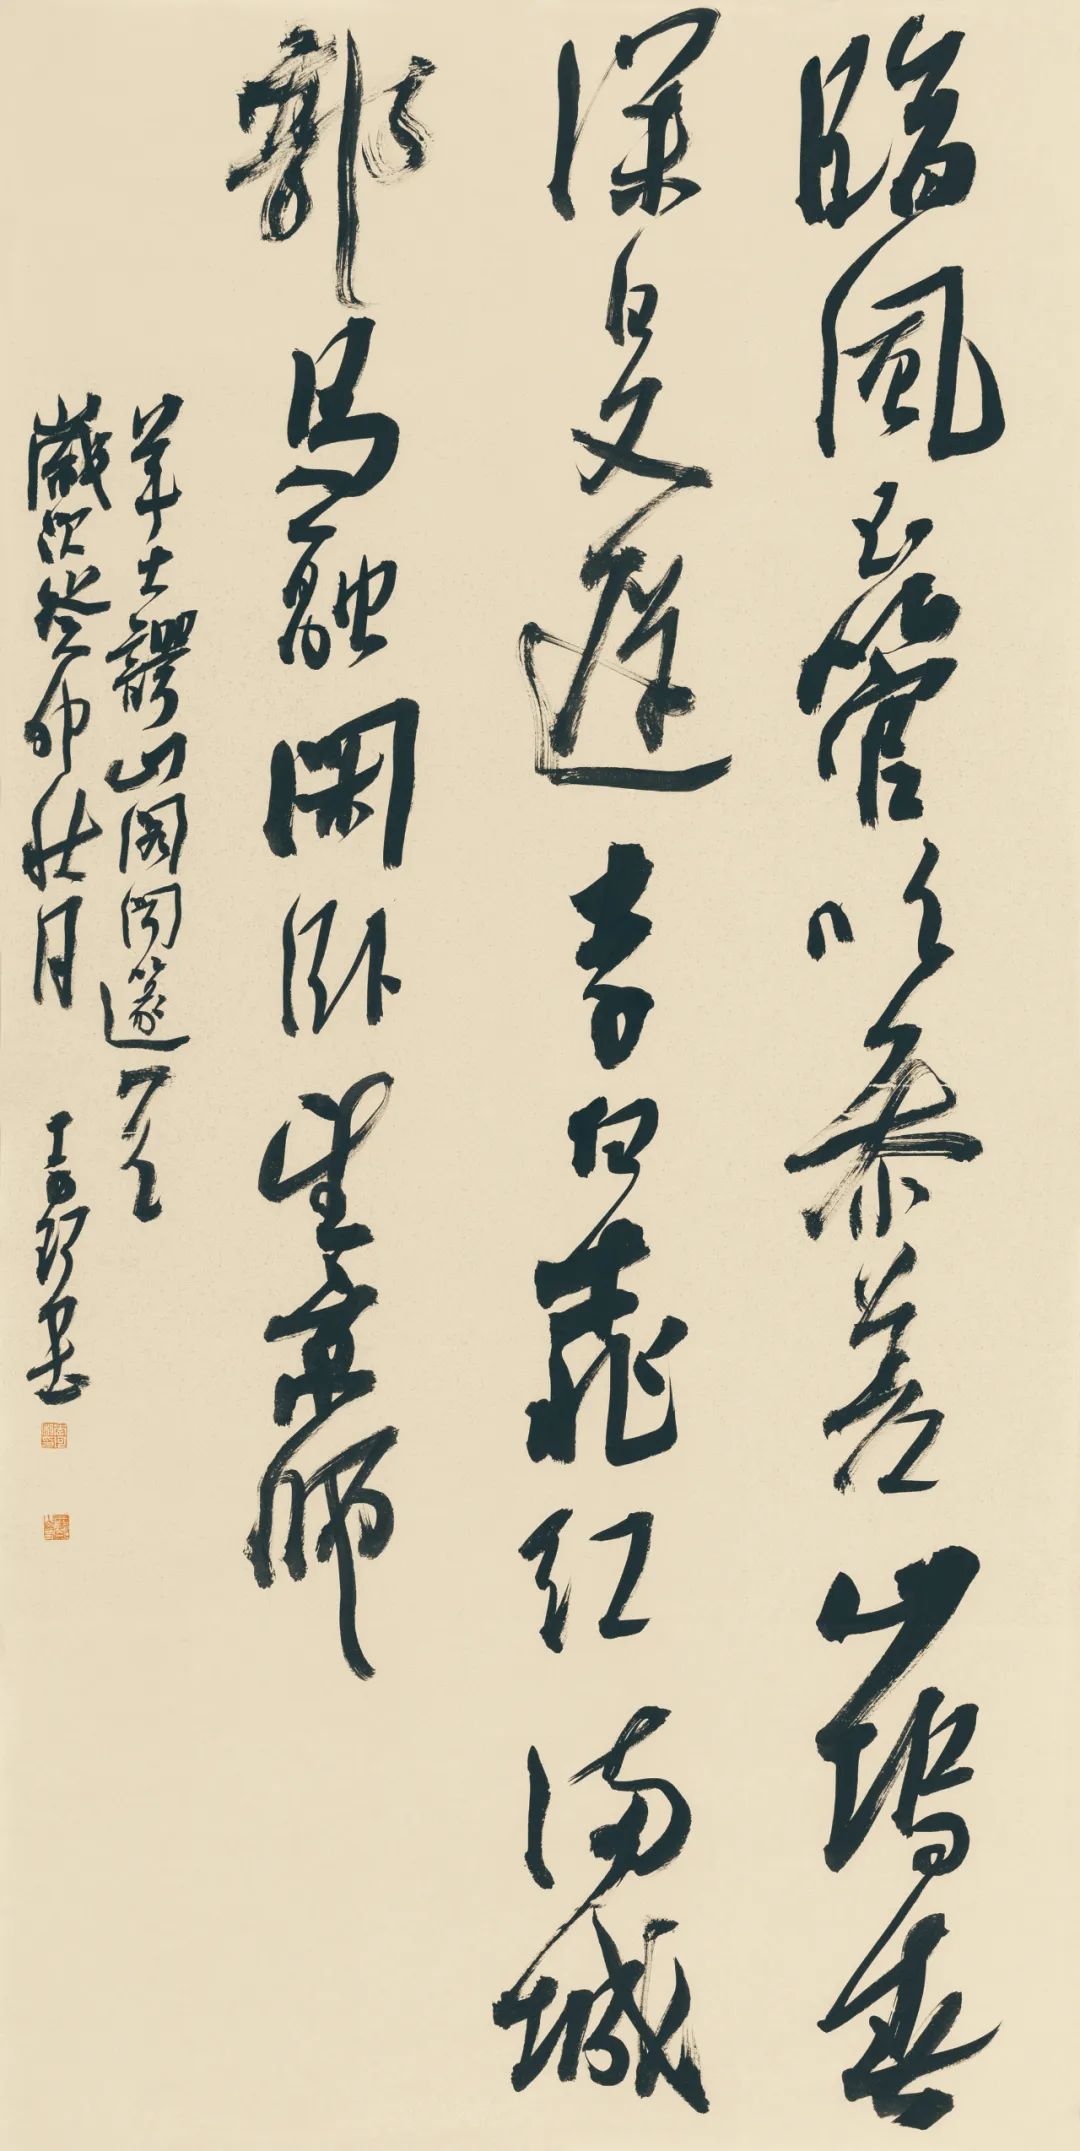 藏·展览丨纸笺传情，笔墨放歌——河南书法名家邀请展 · 参展名家介绍（2）(图12)